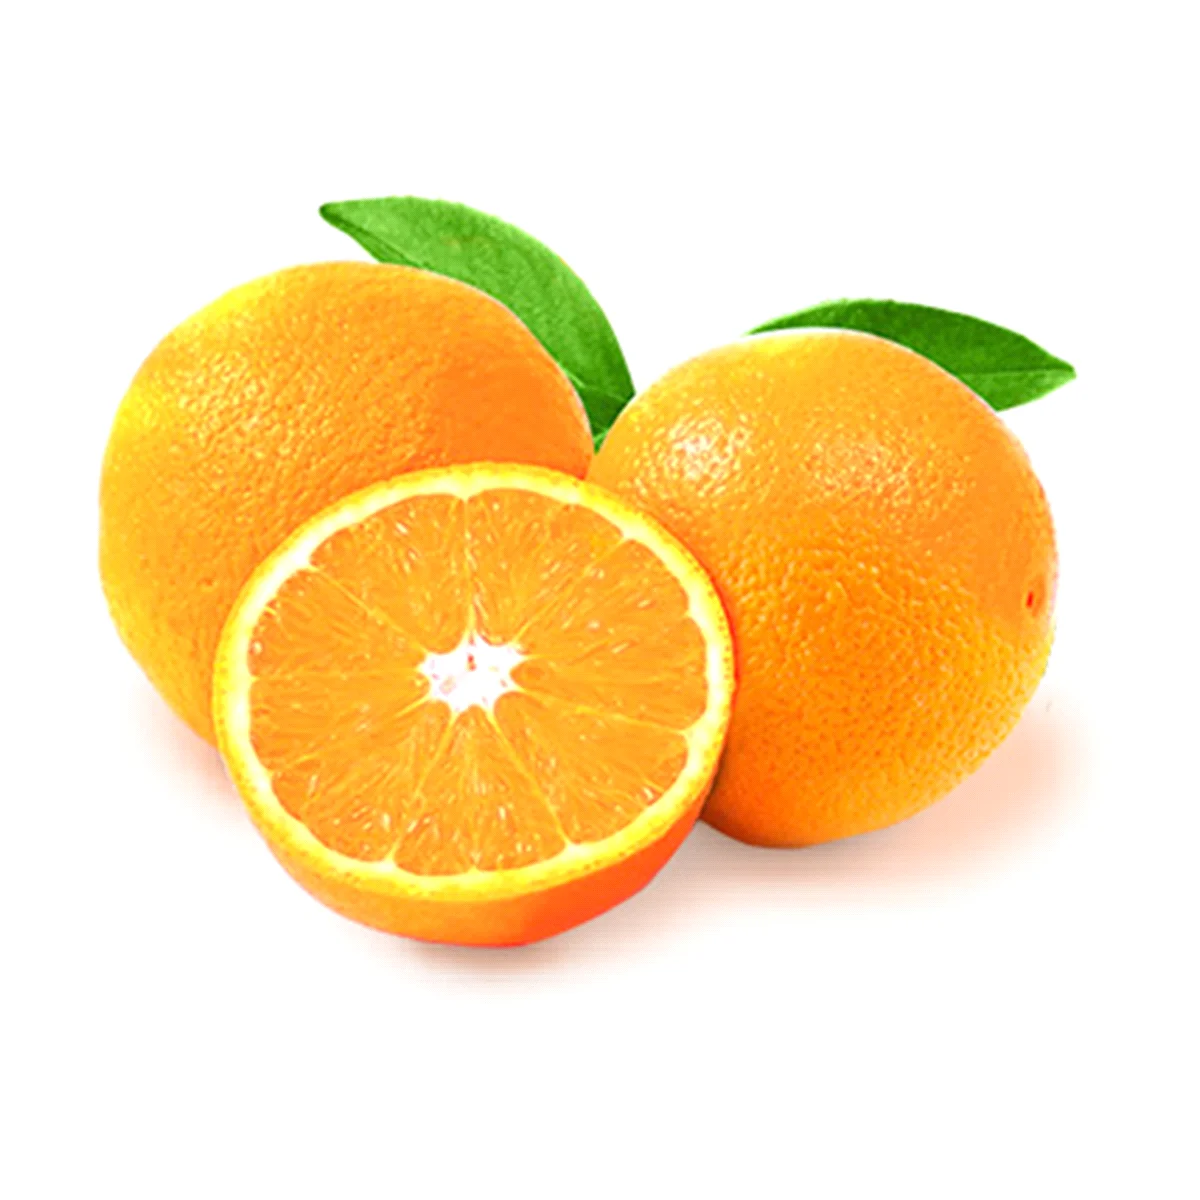 fresh navel oranges,fresh lemons,fresh mandarins orange 